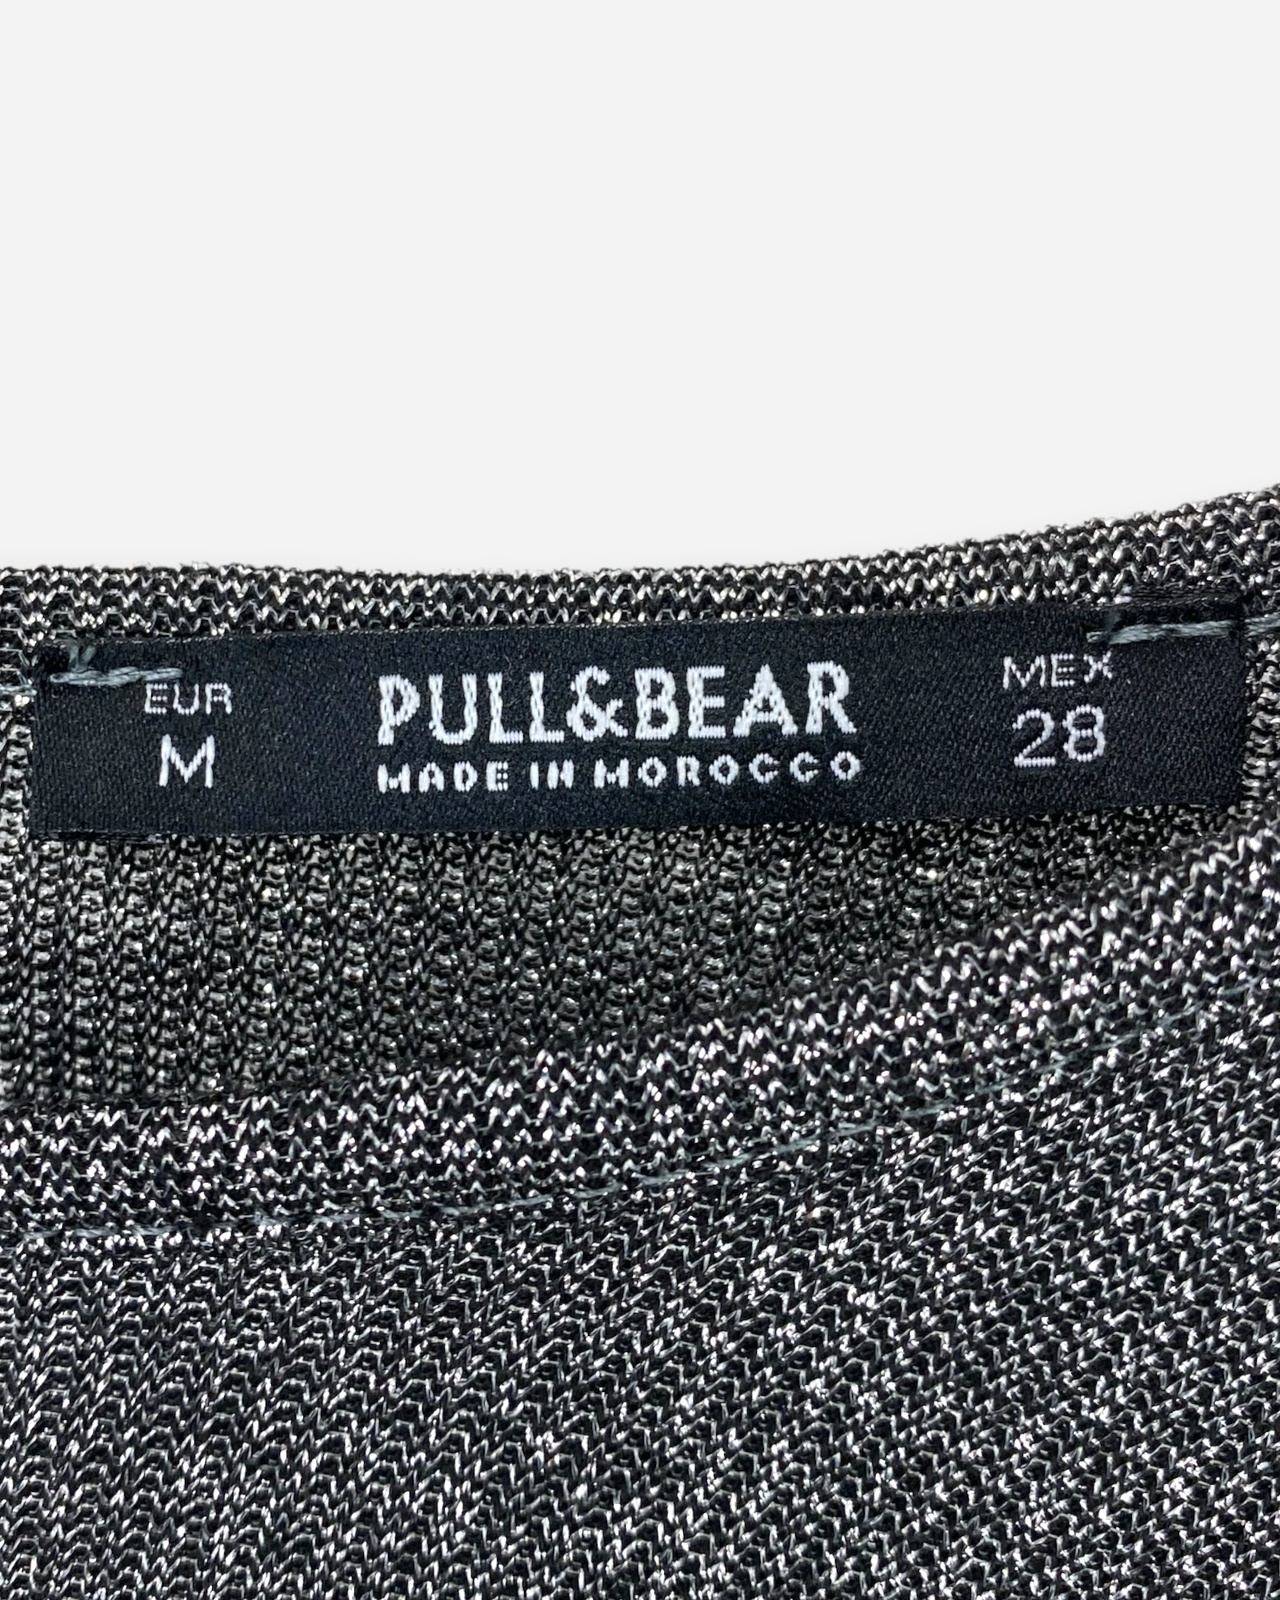 Jumpsuit Pull & Bear T. Mex.28